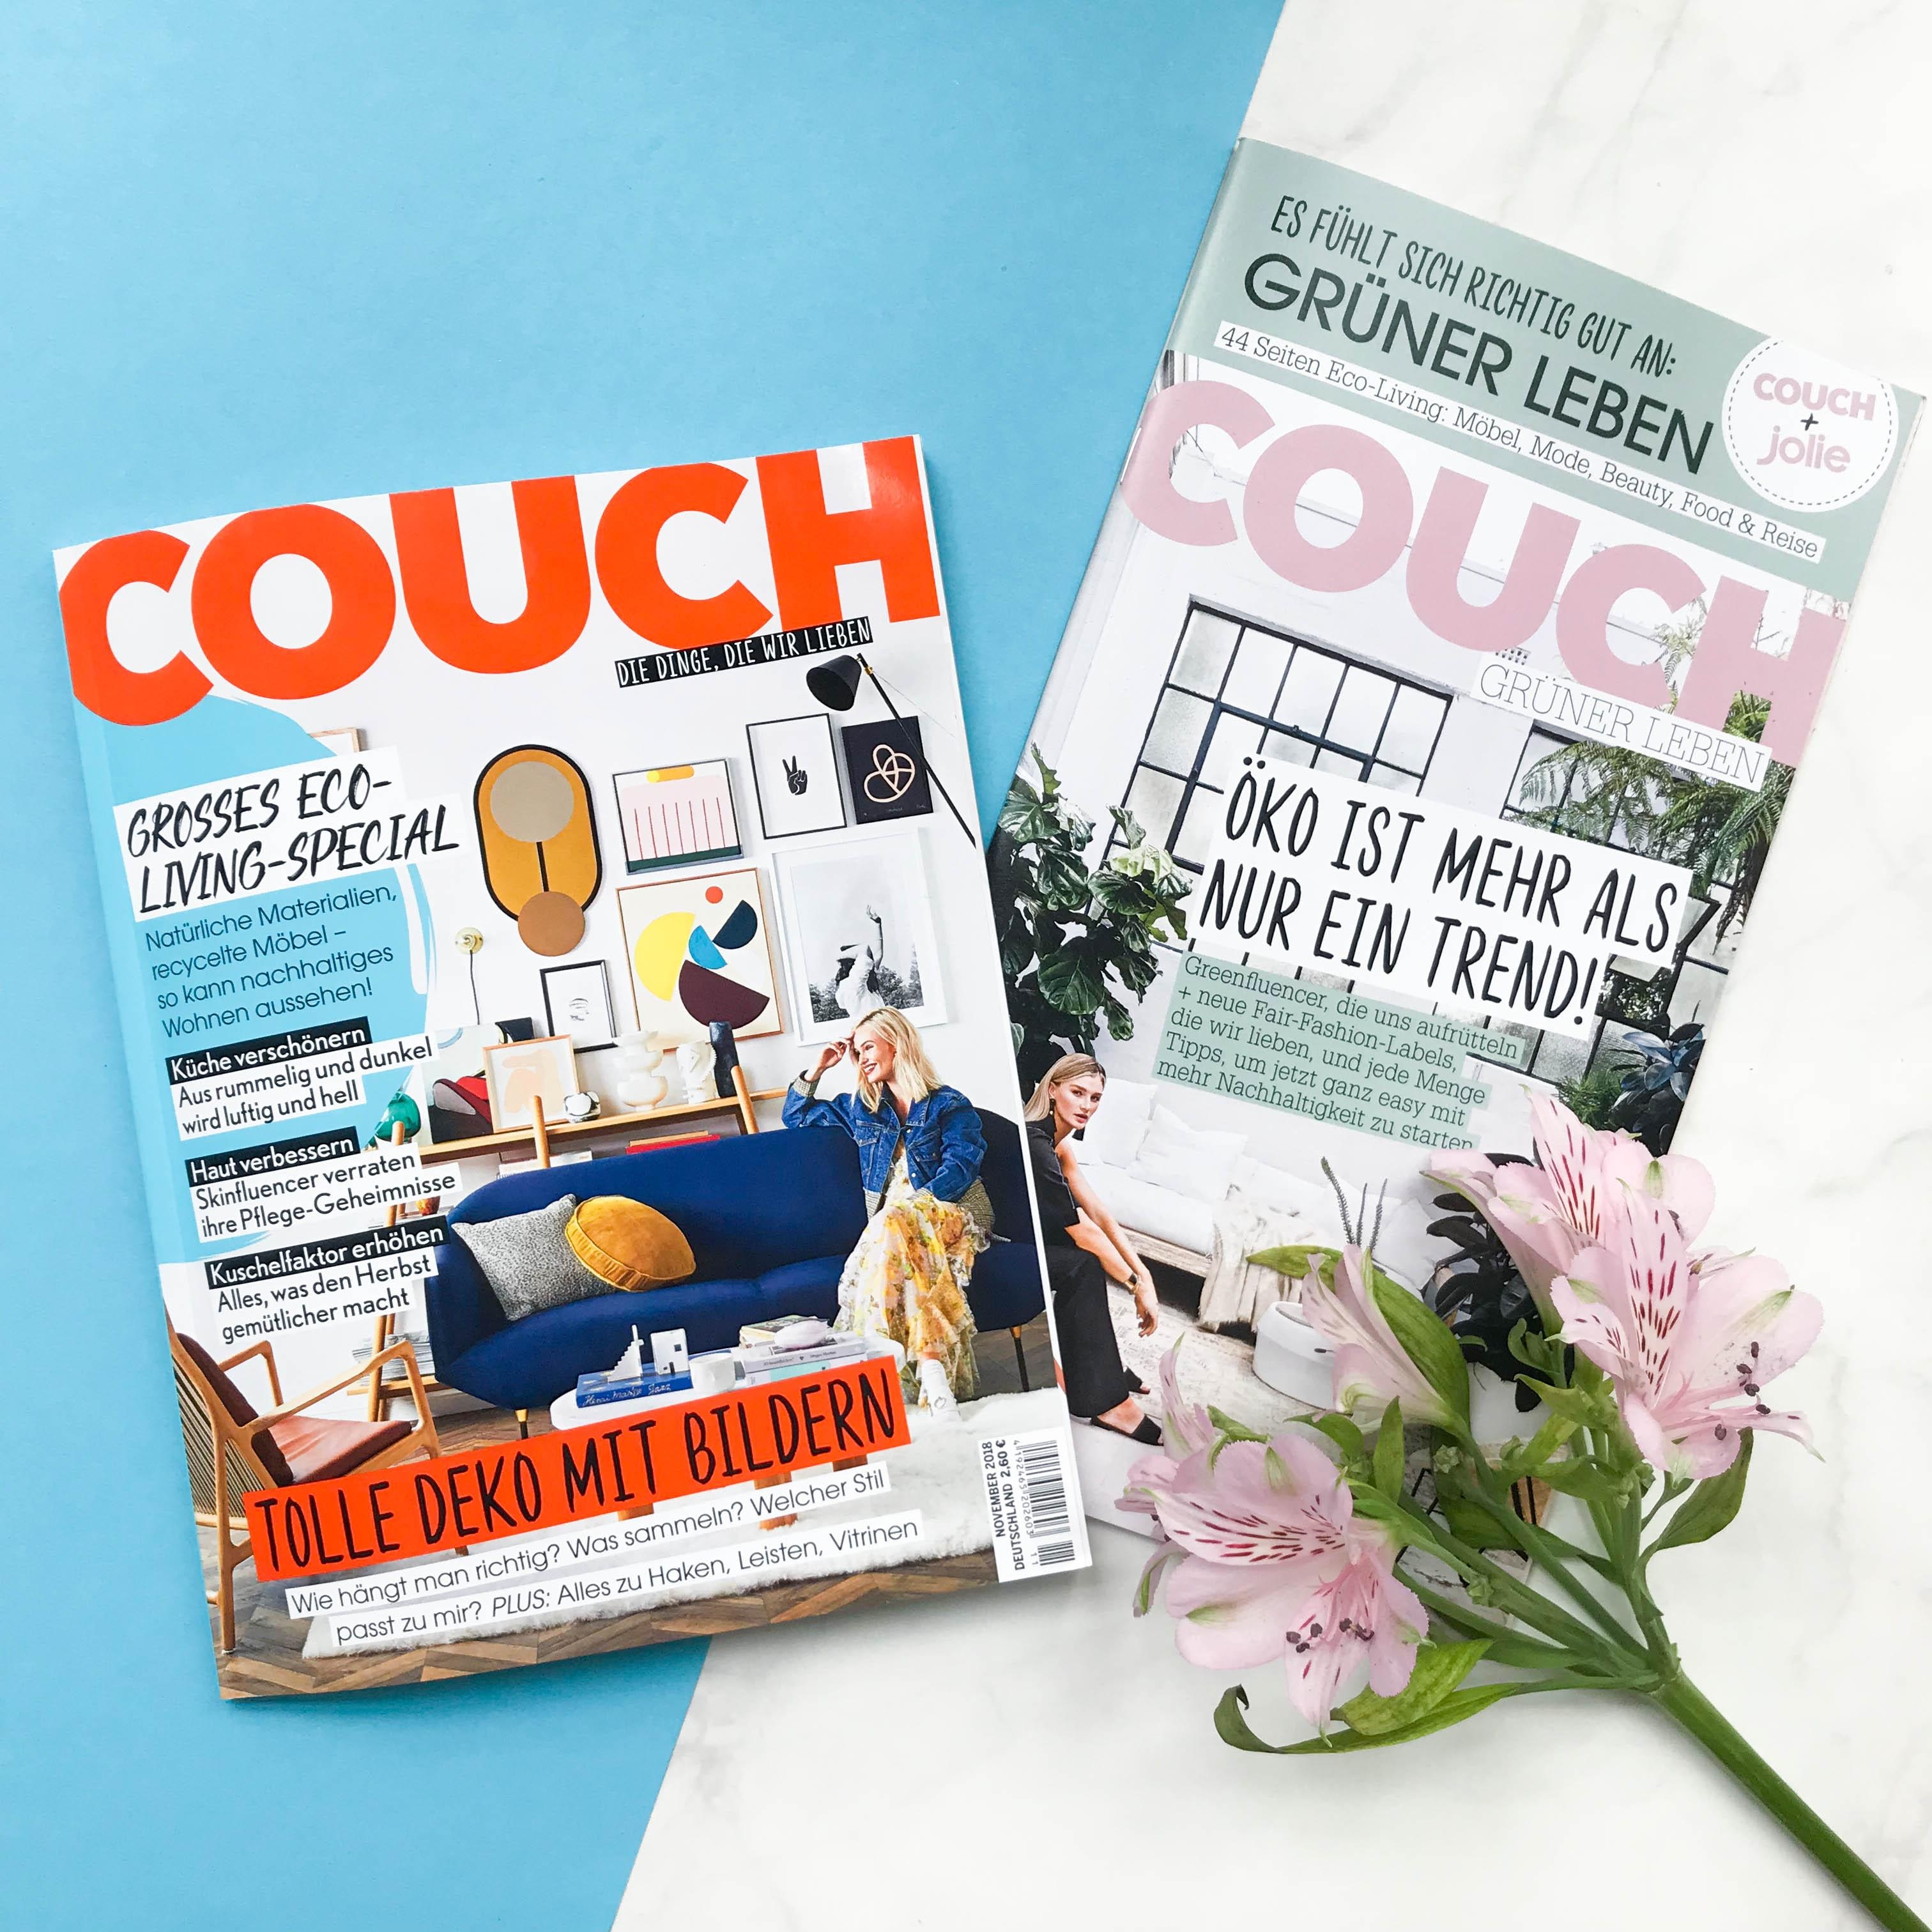 Grüner Leben: Ab heute gibt's die neue COUCH mit 44 Seiten Öko-Extra am Kiosk! #couchmagazin #couchabo